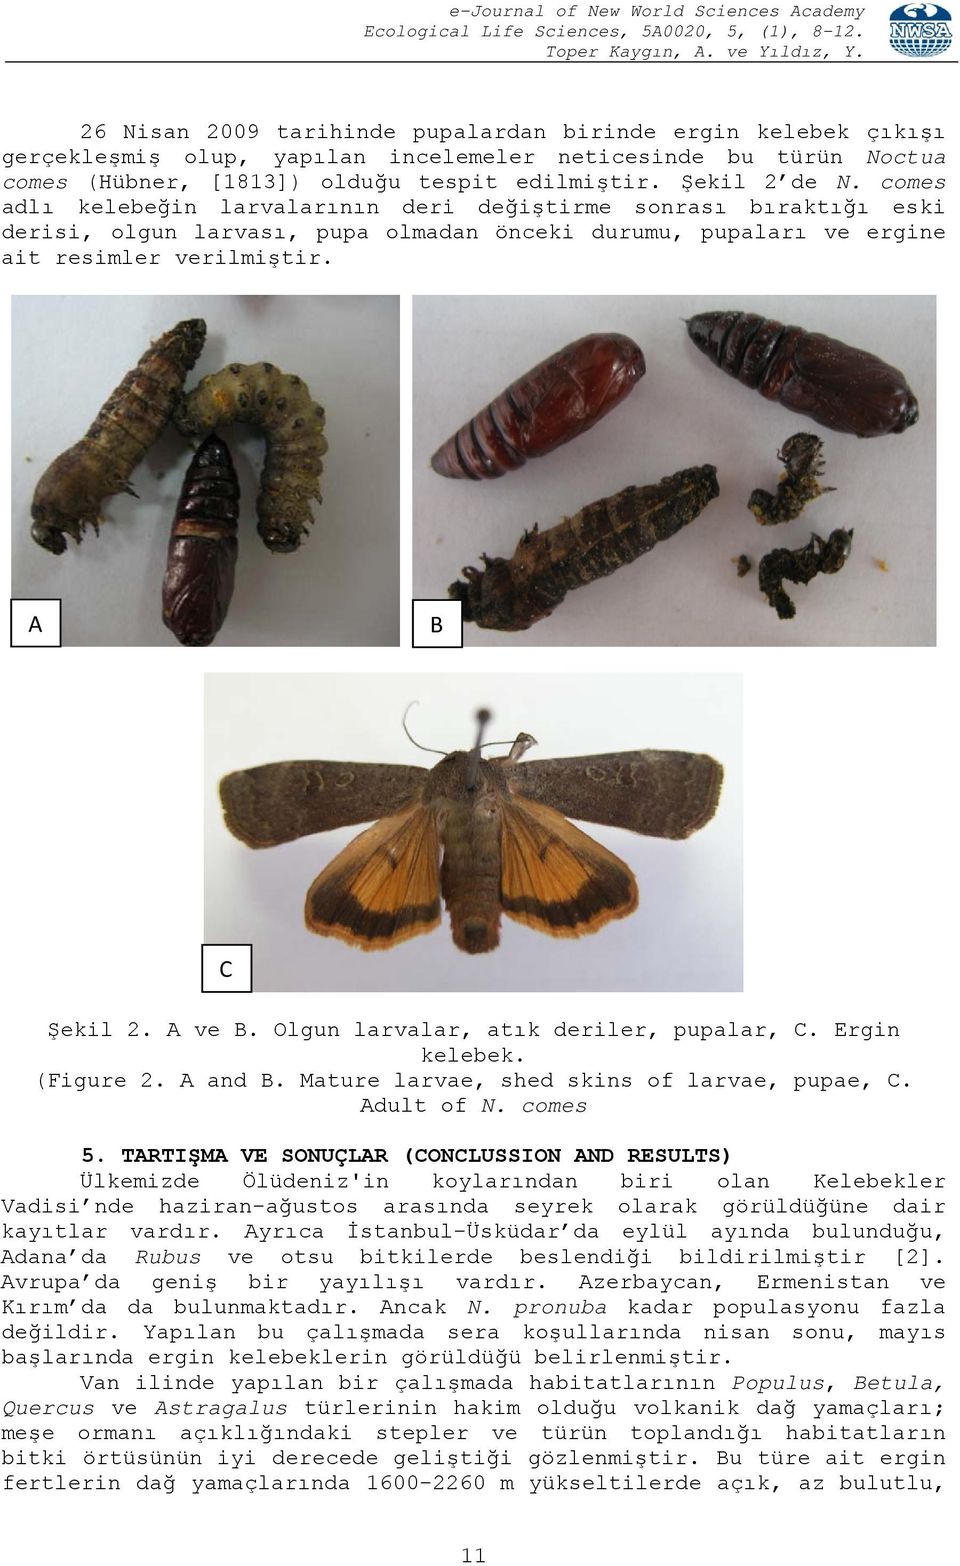 Olgun larvalar, atık deriler, pupalar, C. Ergin kelebek. (Figure 2. A and B. Mature larvae, shed skins of larvae, pupae, C. Adult of N. comes 5.